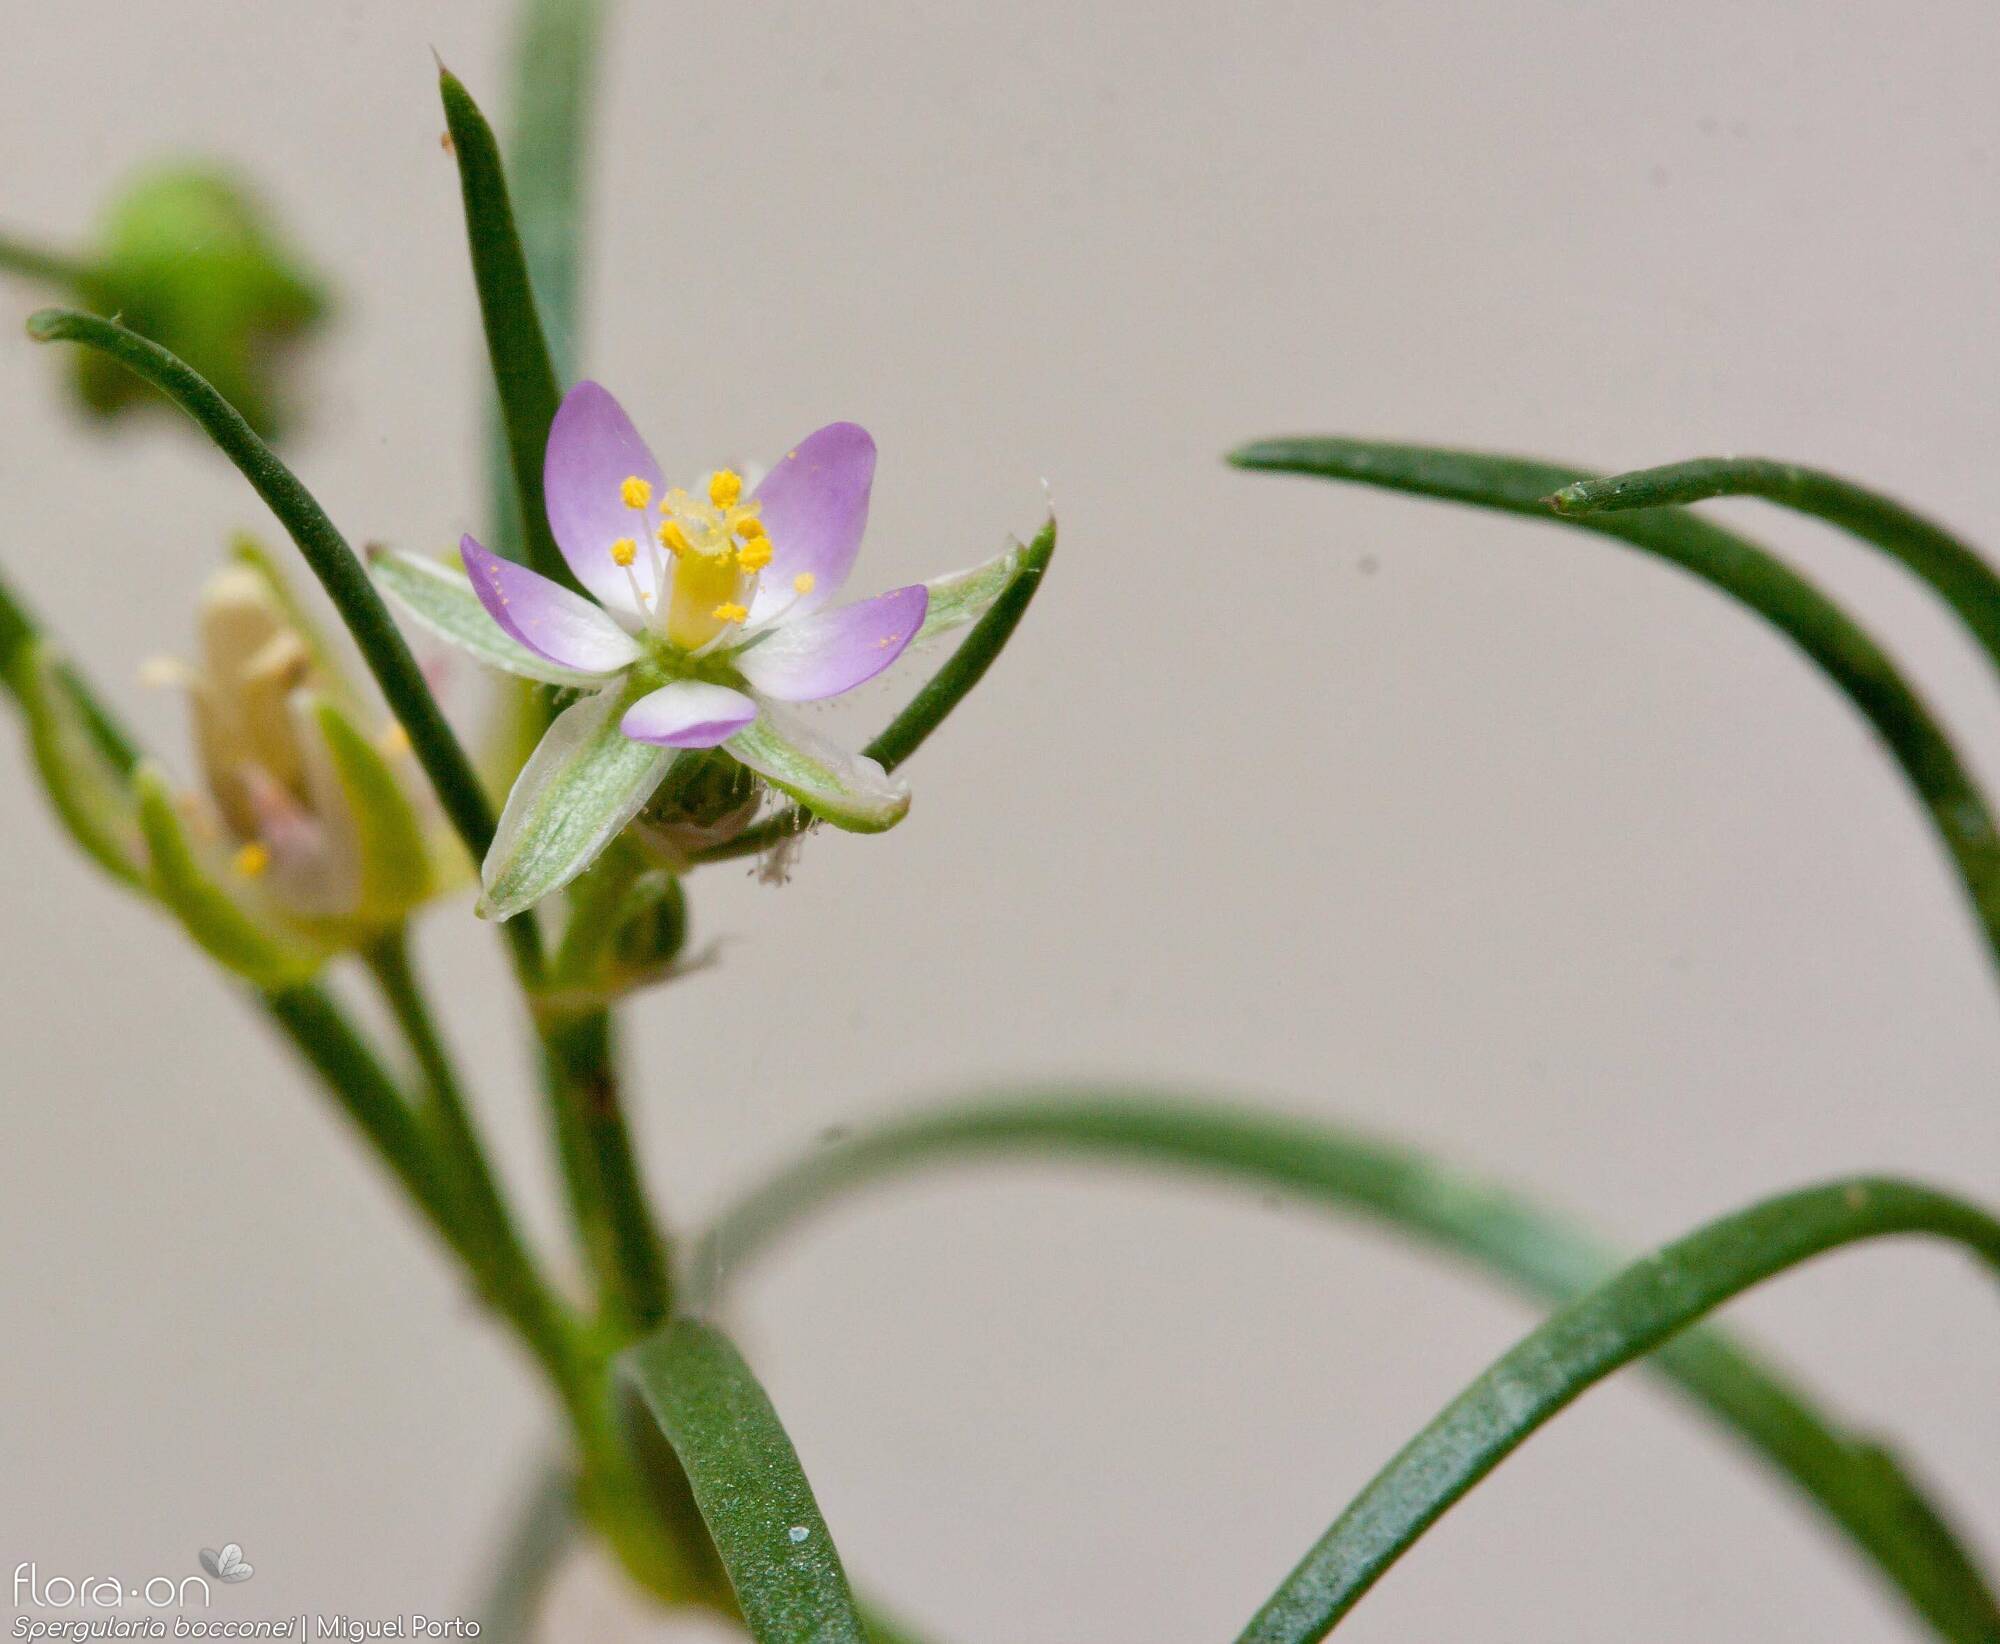 Spergularia bocconei - Flor (geral) | Miguel Porto; CC BY-NC 4.0